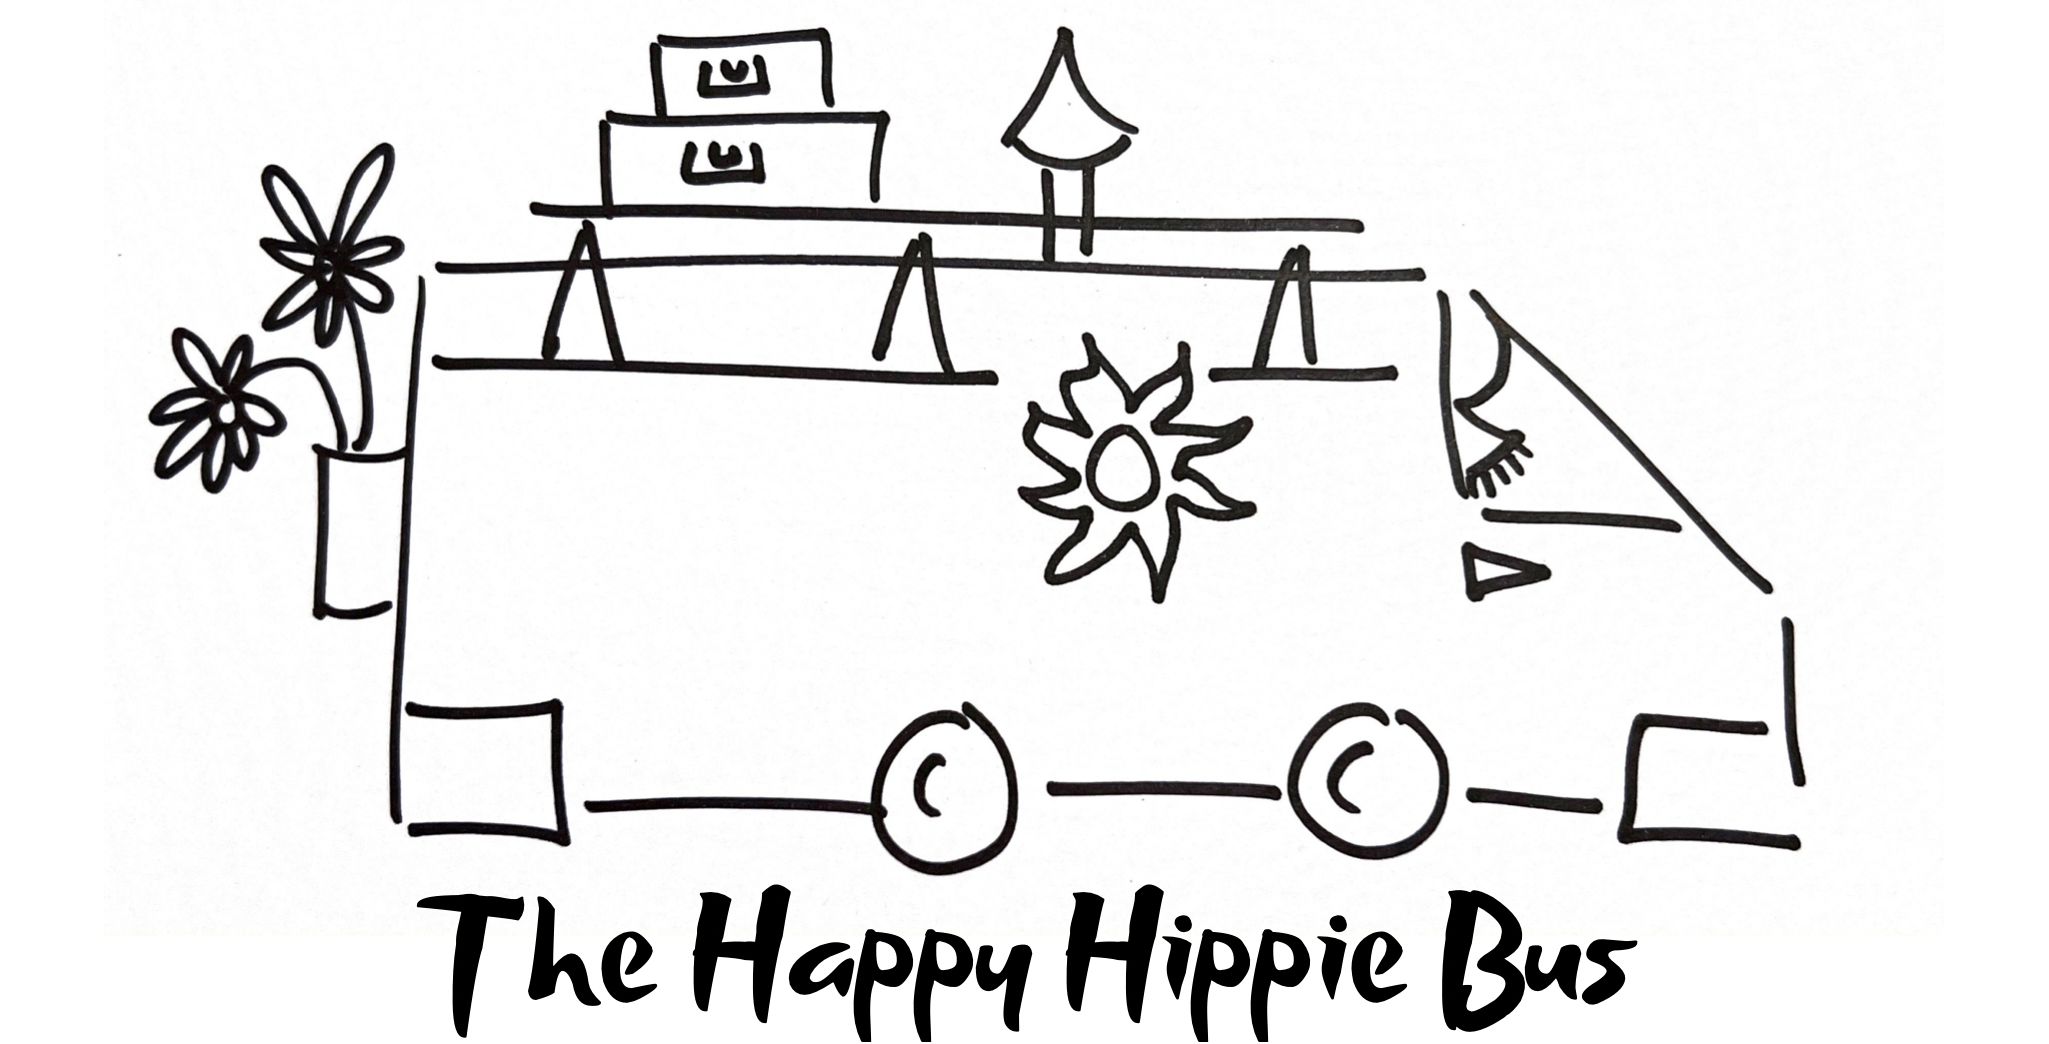 The Happy Hippie Bus